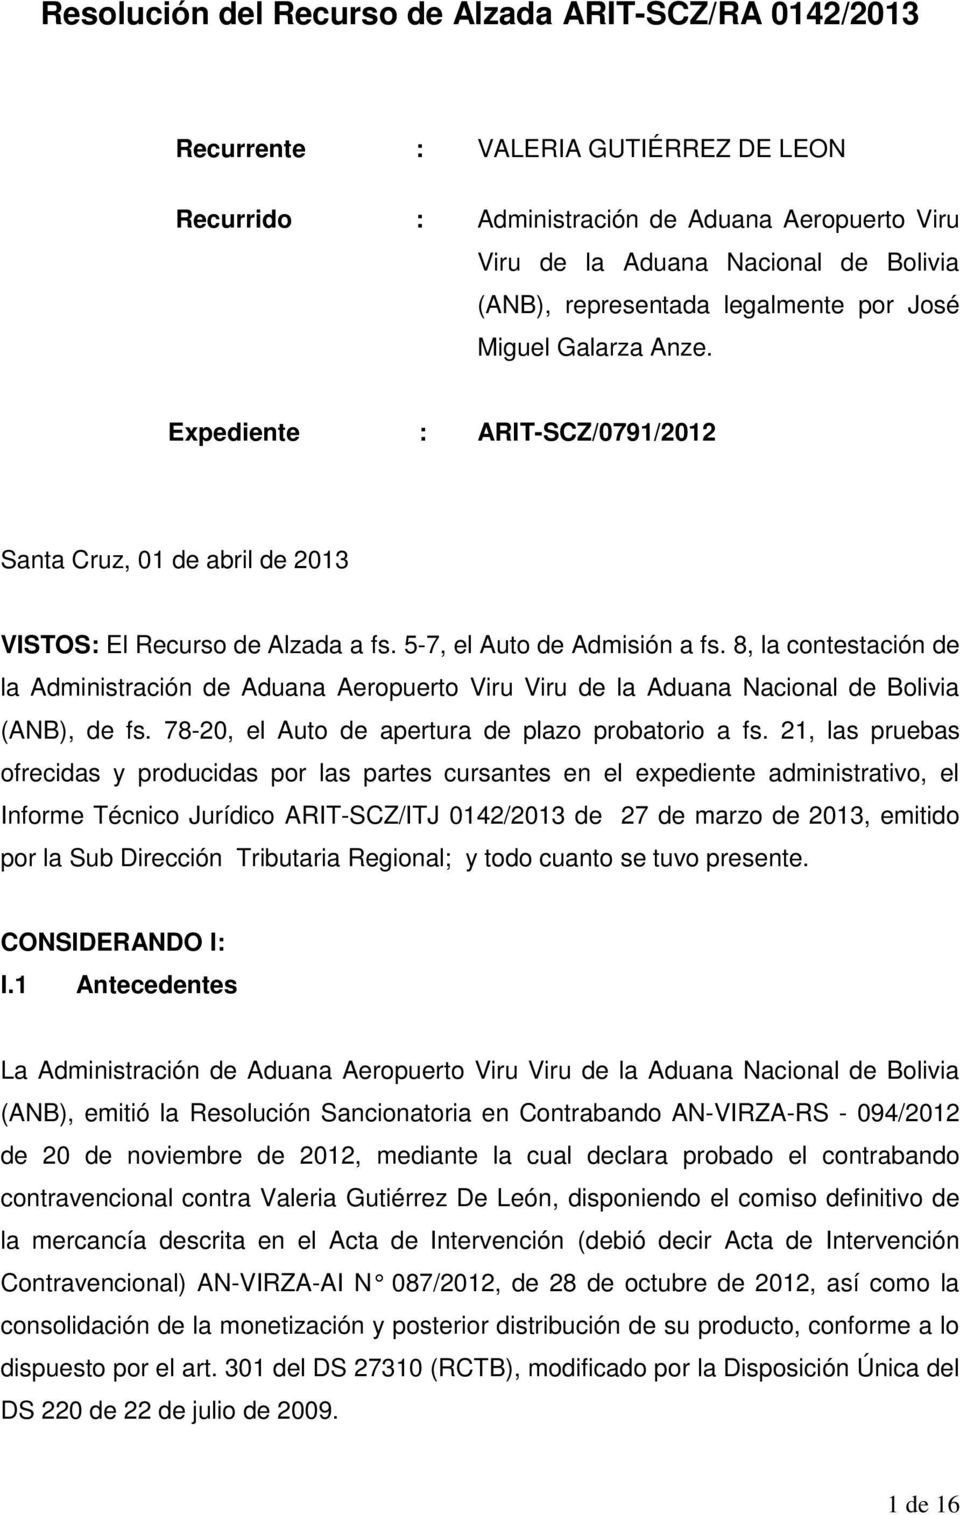 8, la contestación de la Administración de Aduana Aeropuerto Viru Viru de la Aduana Nacional de Bolivia (ANB), de fs. 78-20, el Auto de apertura de plazo probatorio a fs.